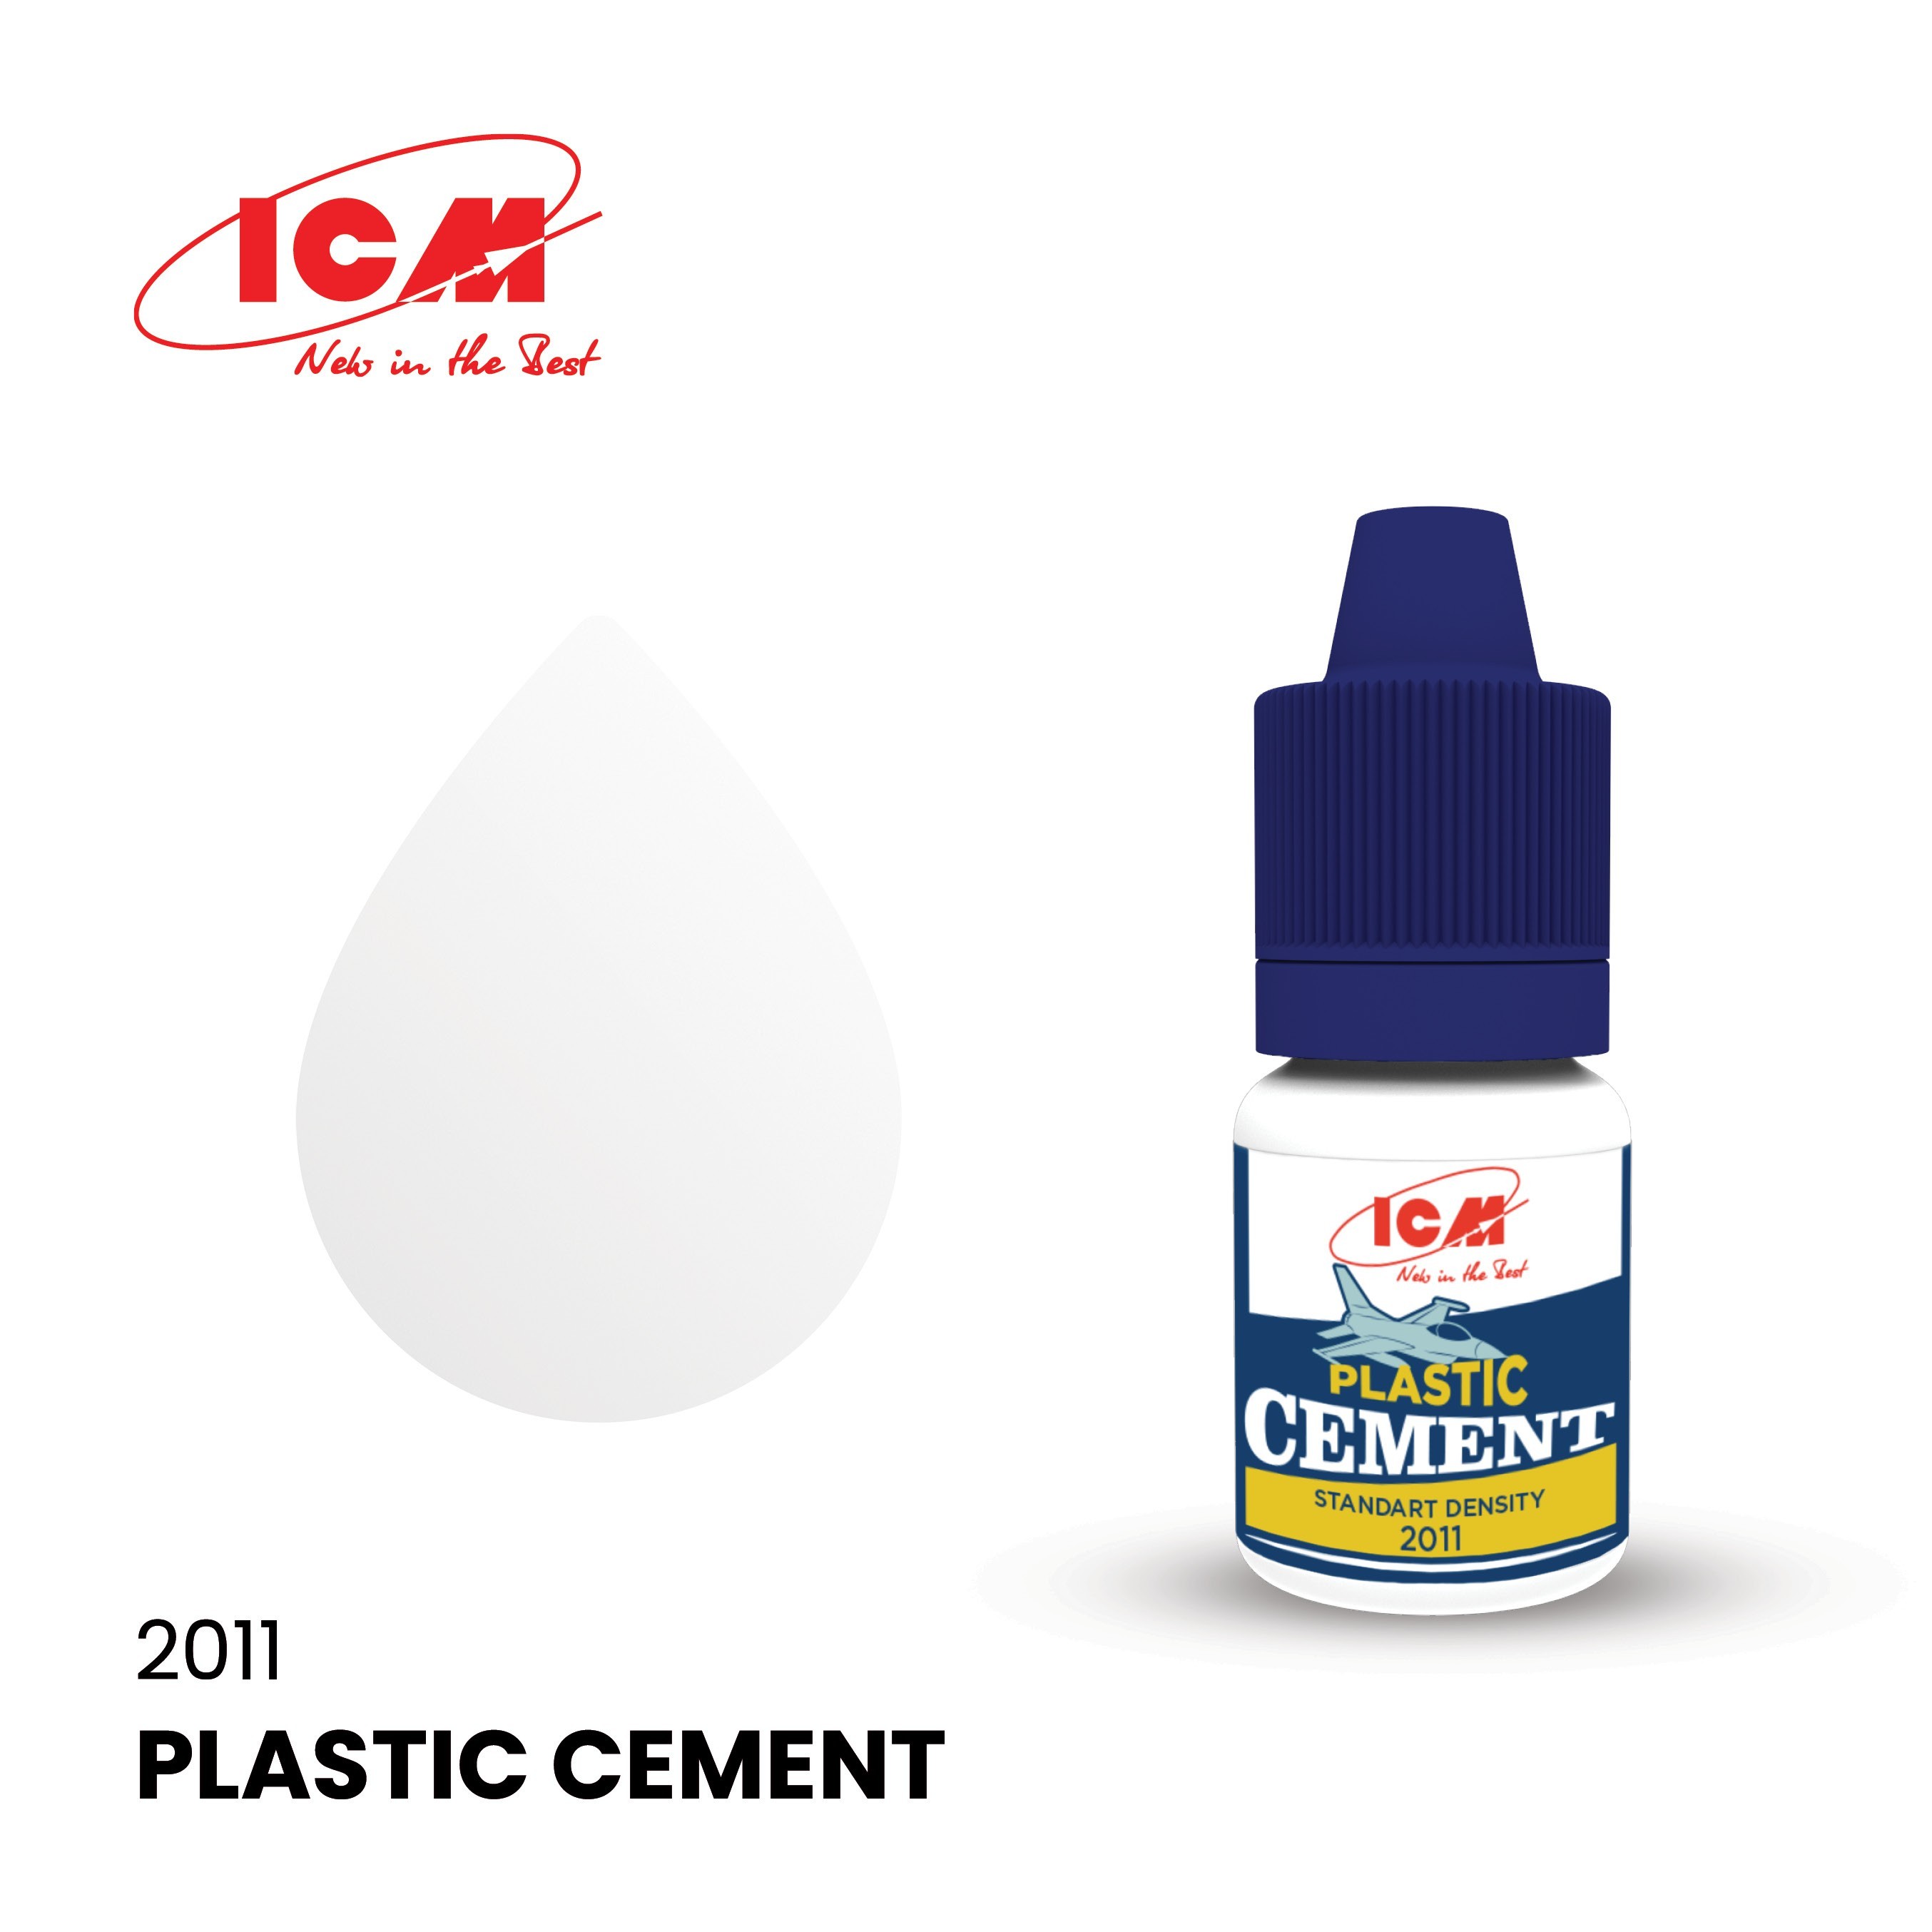 Plastic cement